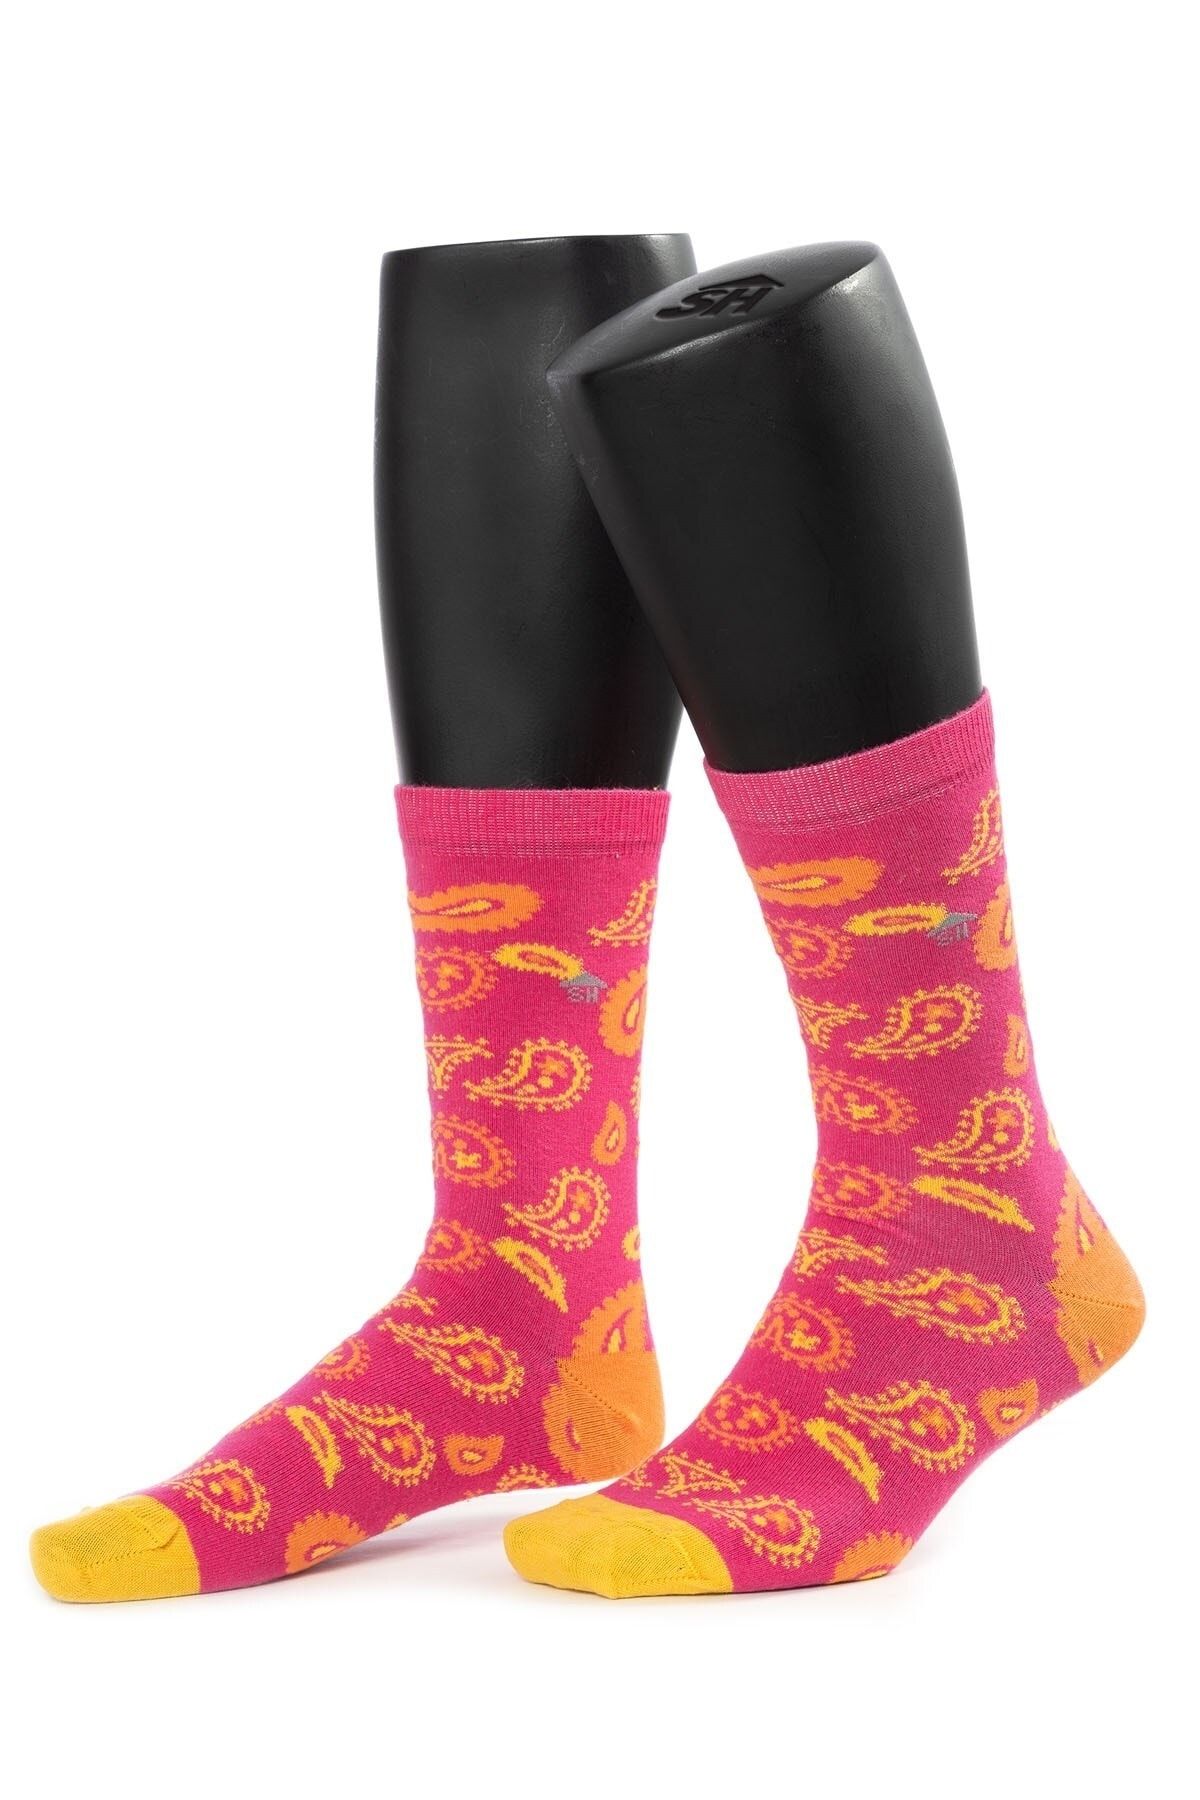 The Socks House Kadın Şal Desenli Çorap